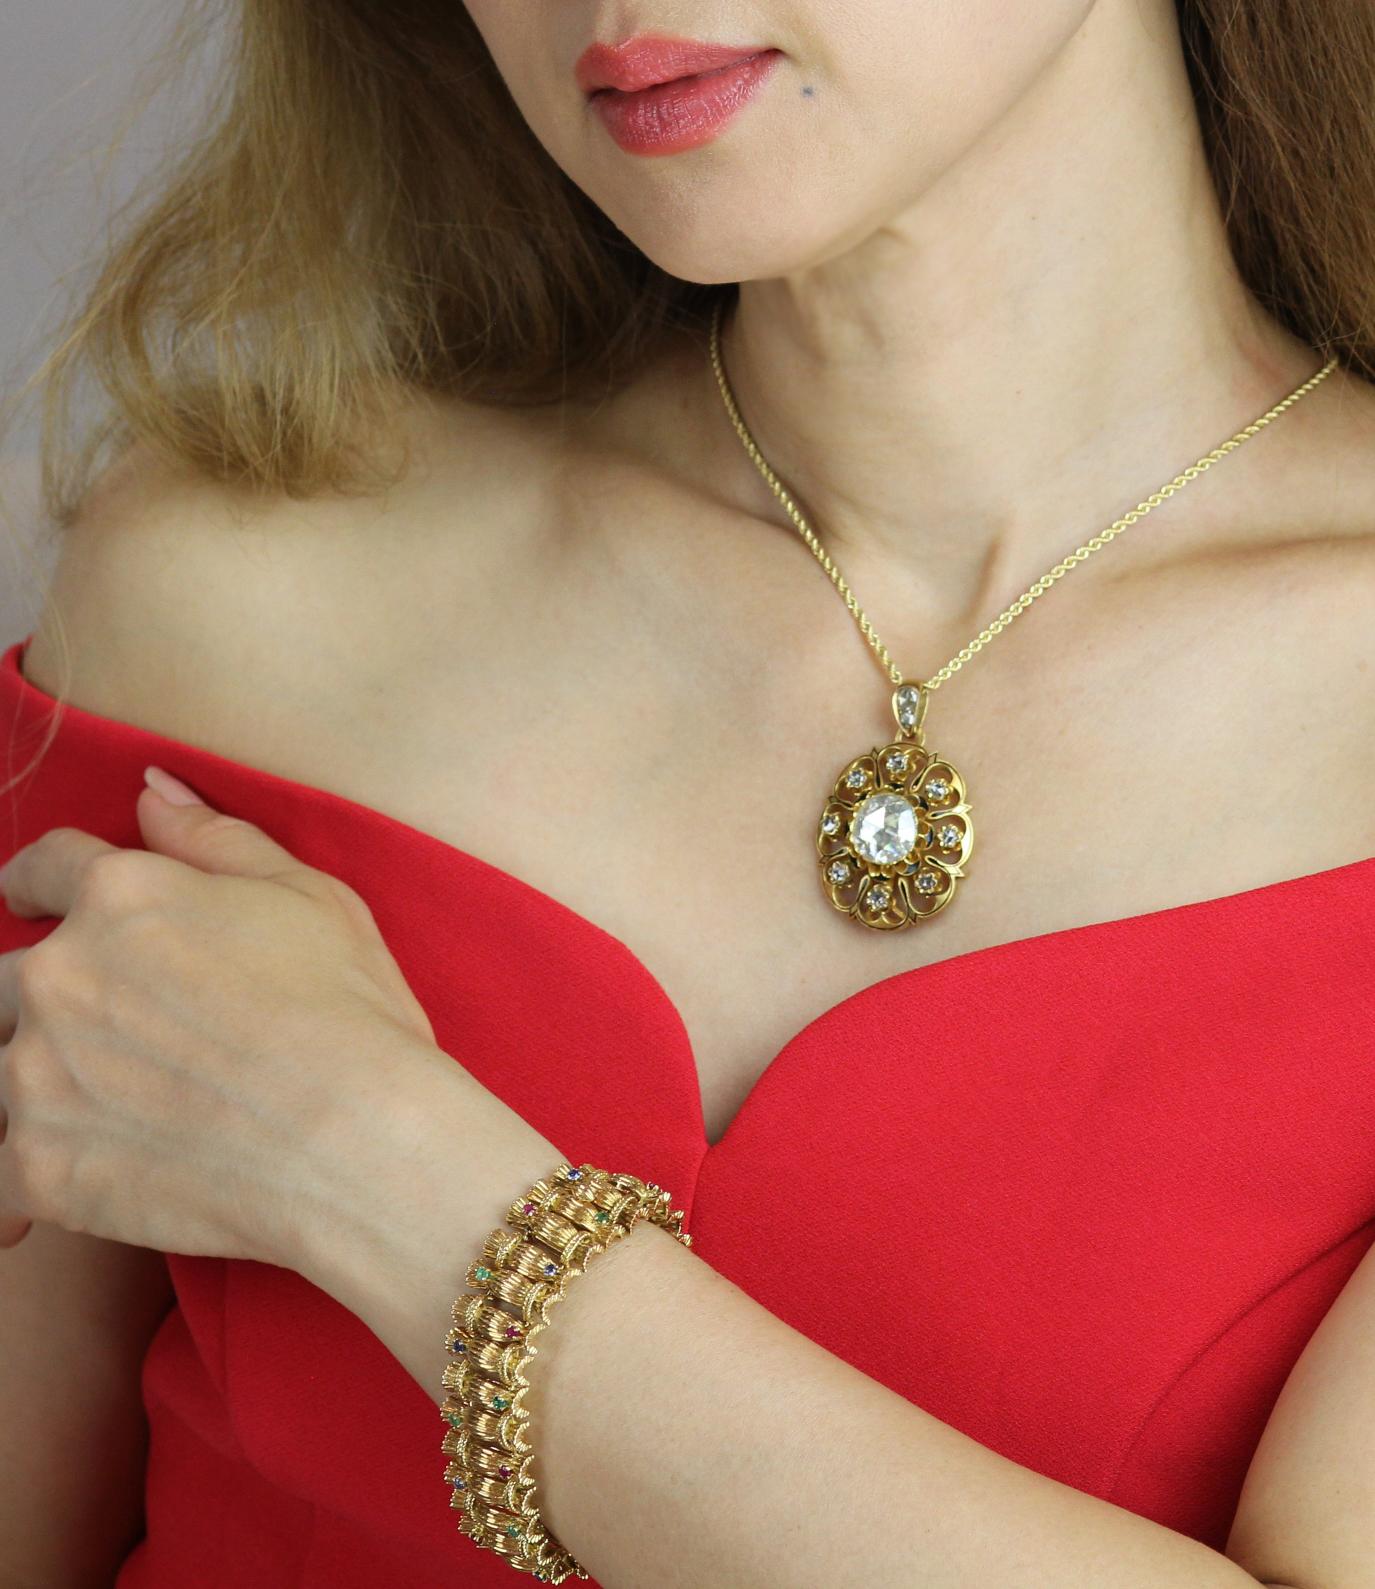 Ungewöhnliches Armband aus 18 Karat Gelbgold mit geripptem Design aus den 1970er Jahren.  Dieses in Frankreich hergestellte Einzelstück ist auf beiden Seiten mit abwechselnd rund geschliffenen Rubinen, Smaragden und Saphiren von 2,5-2,7 mm